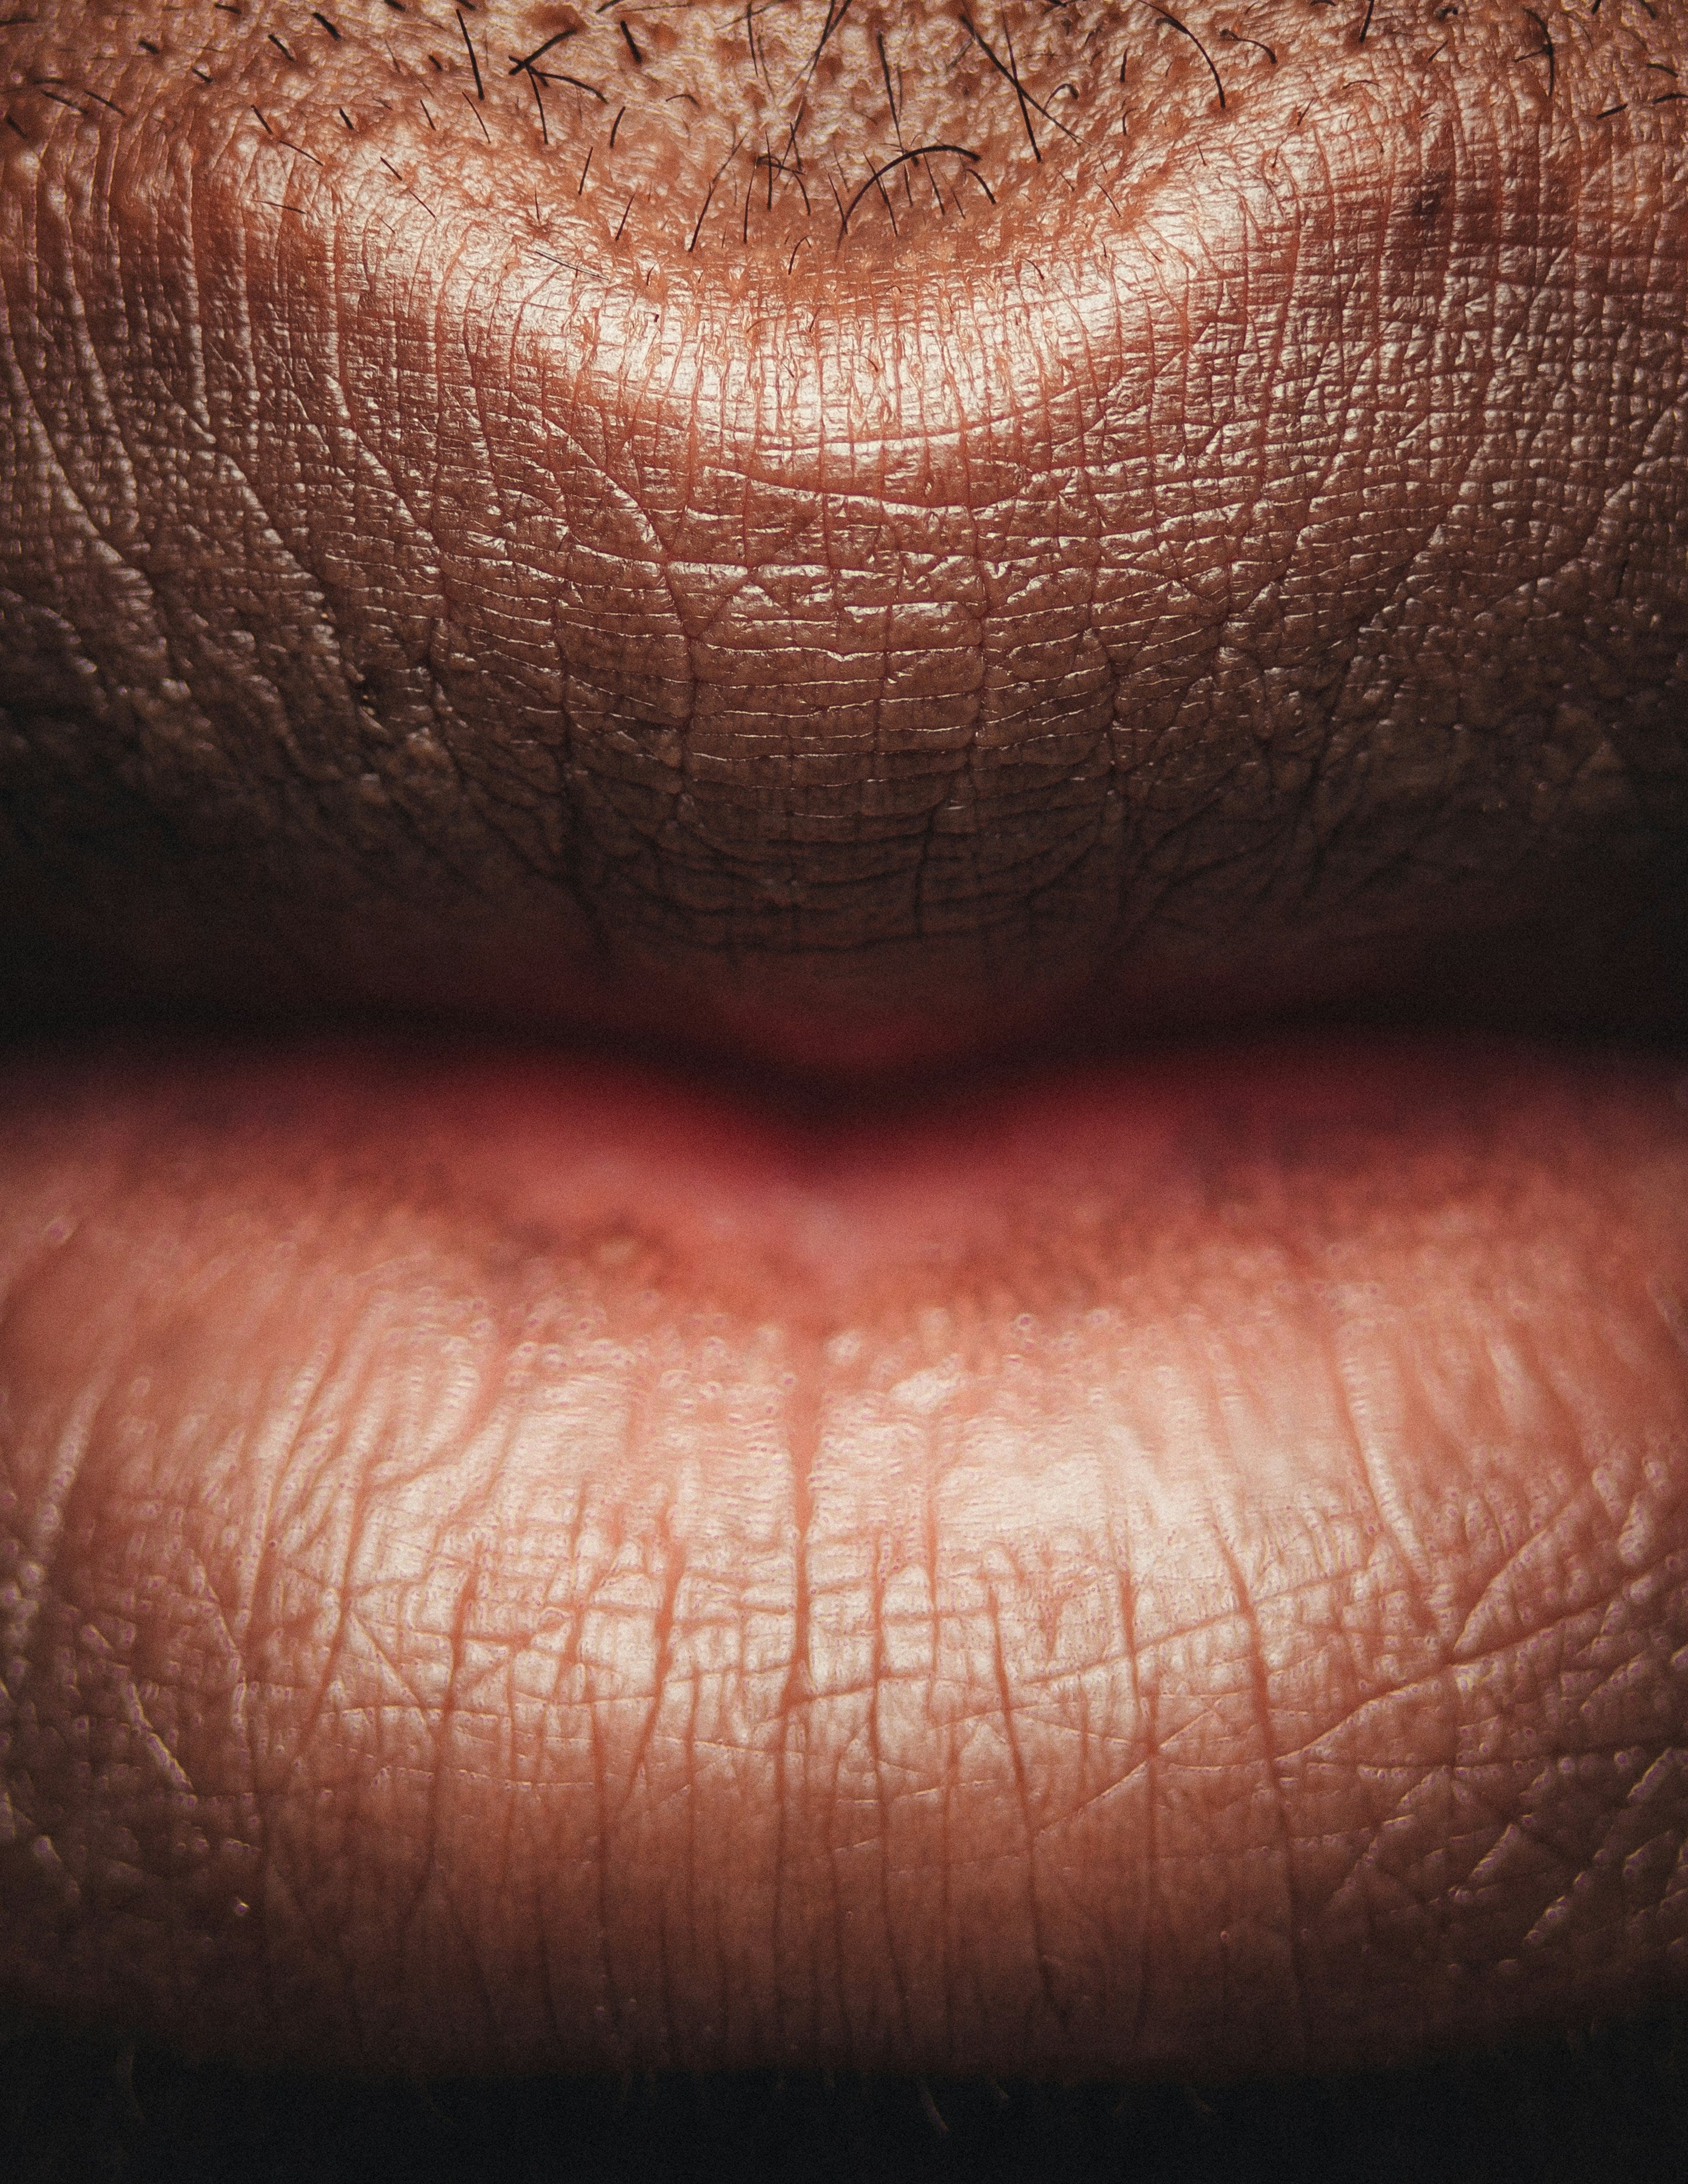 Can Lip Balm Make Lips Worse? Chapstick Vs Chapped lips